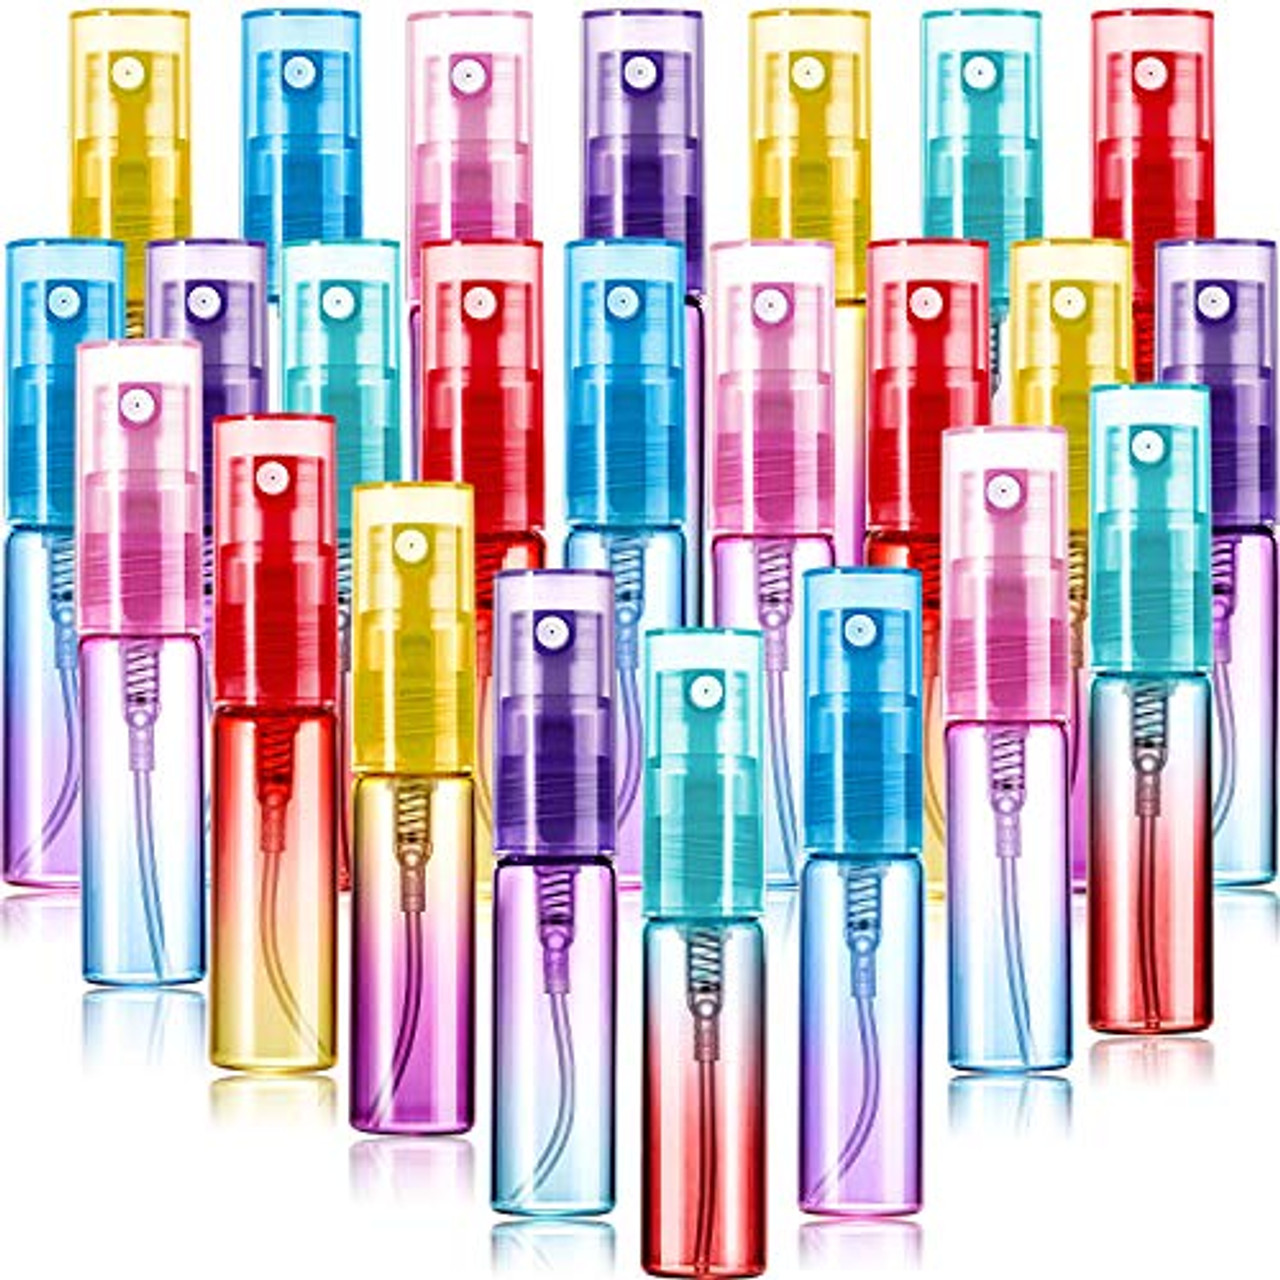 Mini Spray Bottle 5ml, Refillable Glass Spray Bottle, Glass Bottle